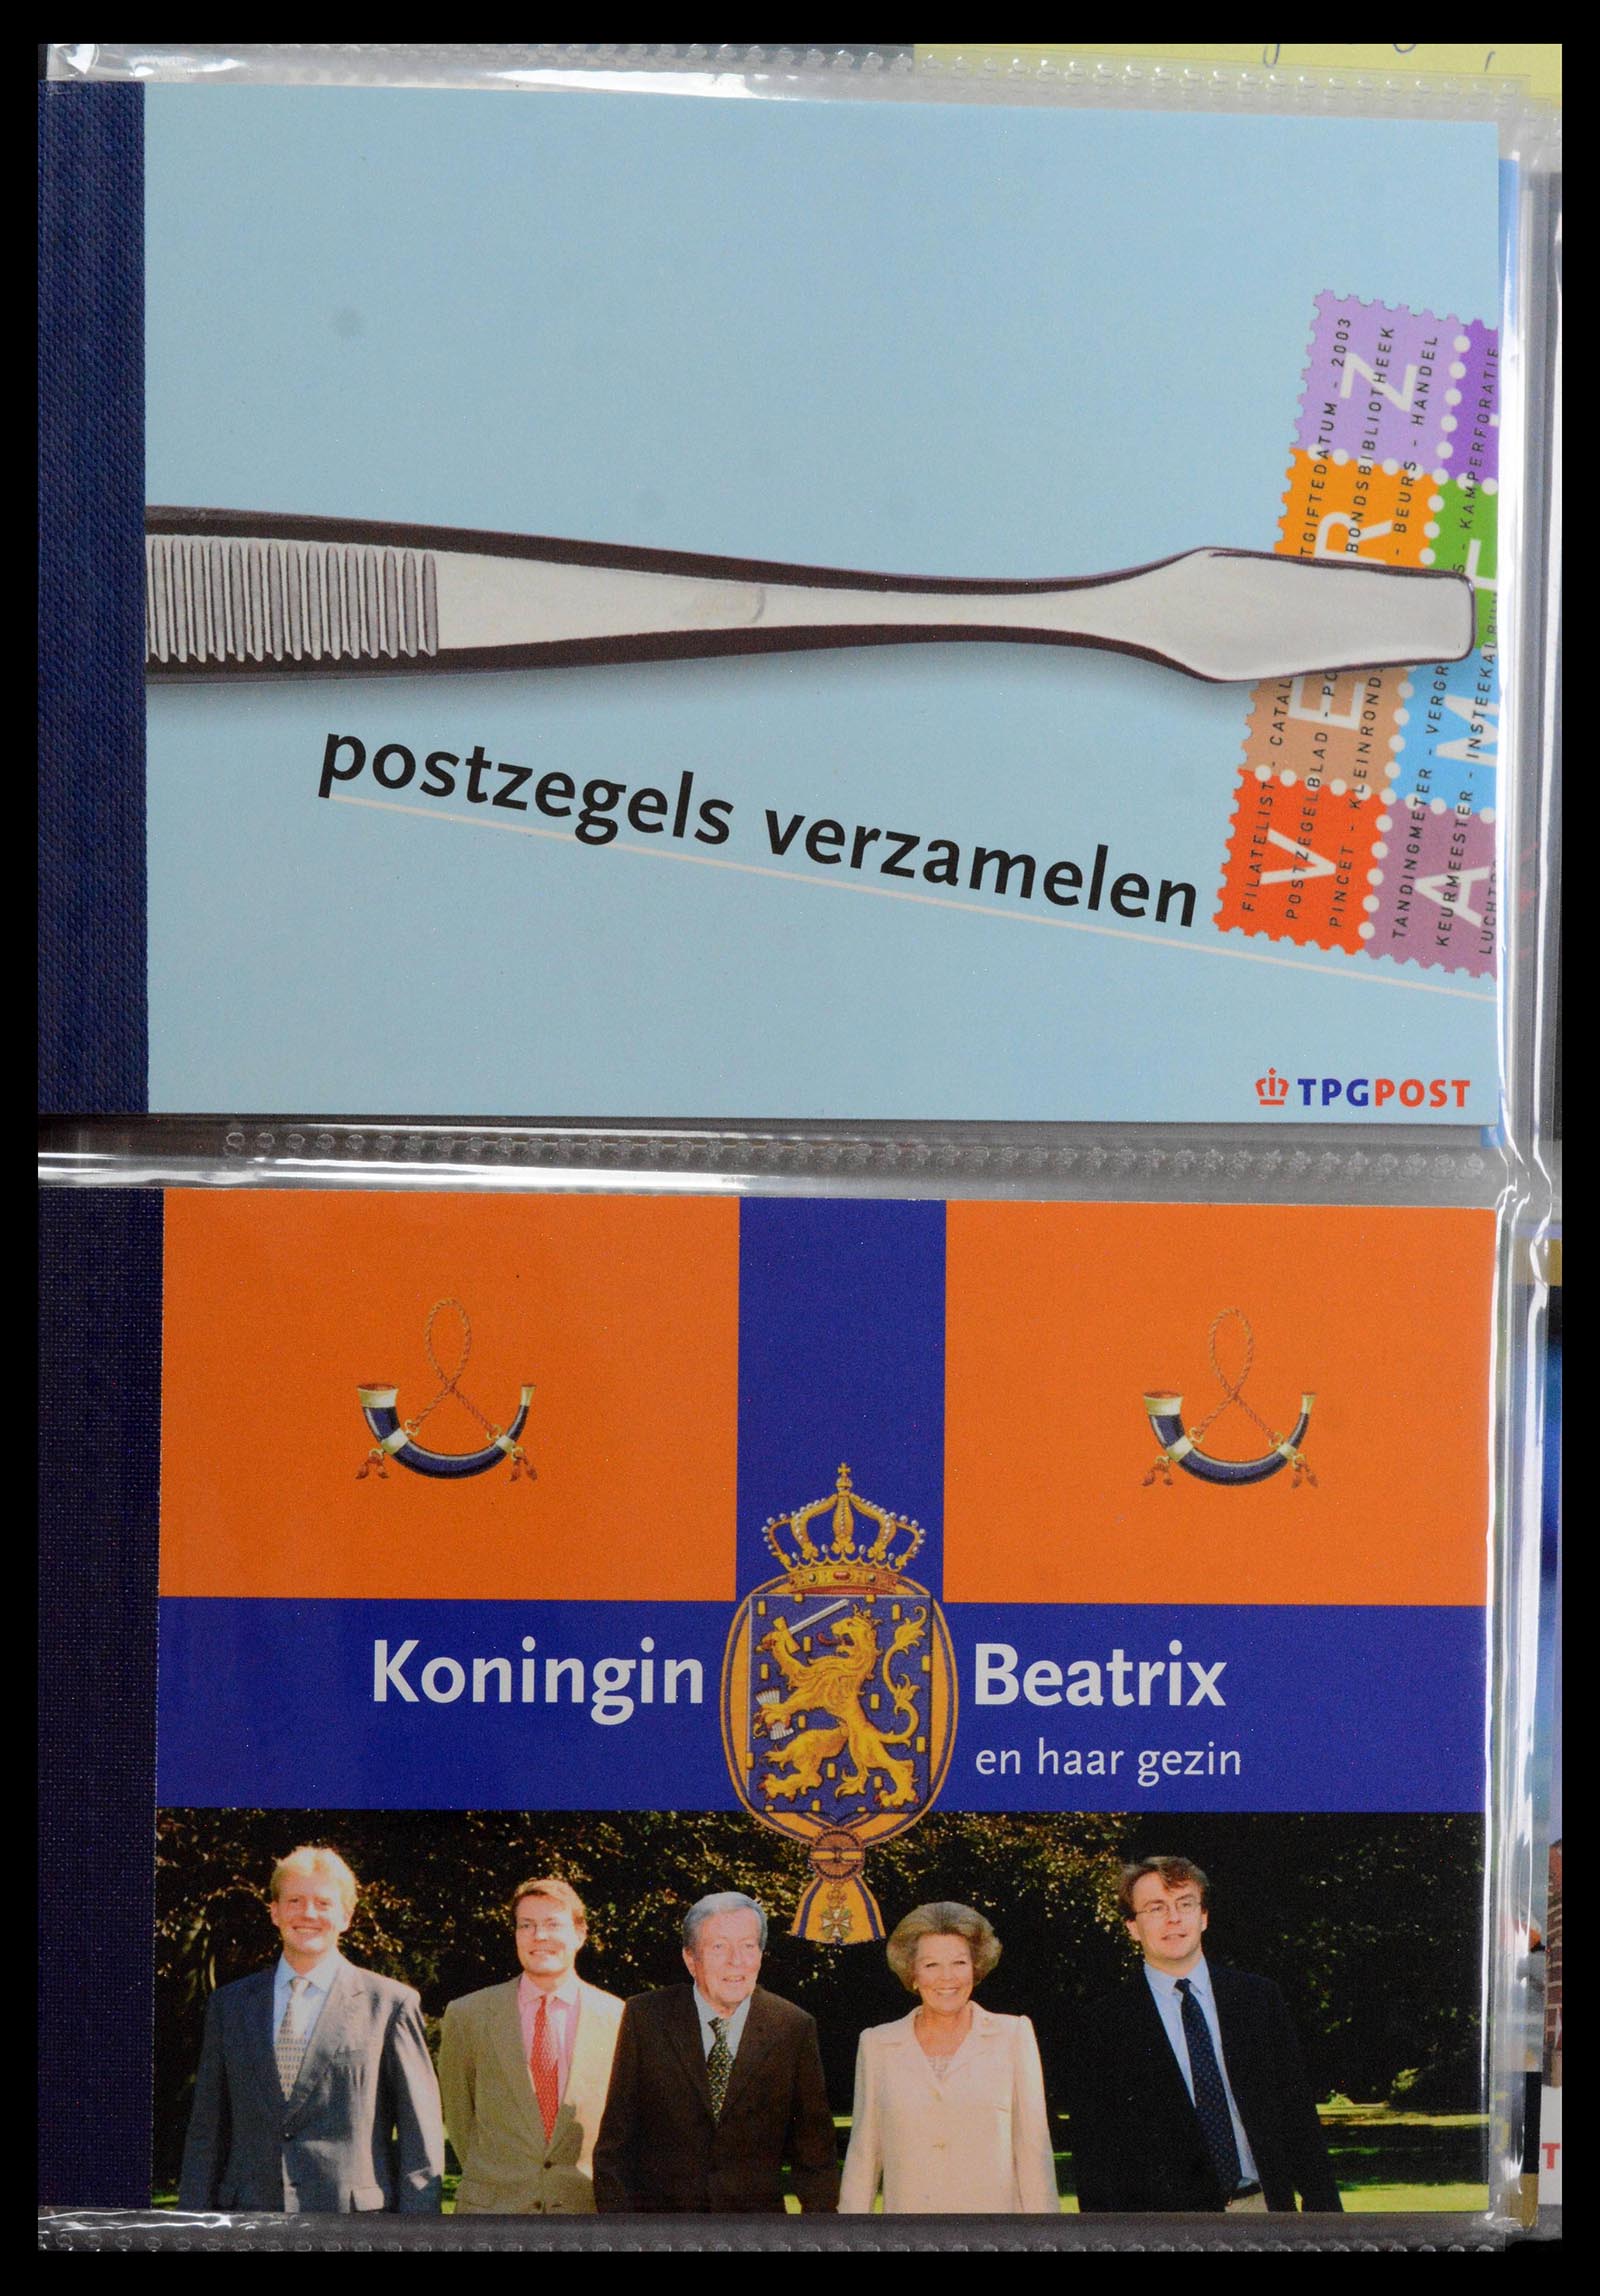 39018 0001 - Stamp collection 39018 Netherlands prestige booklets 2003-2016.